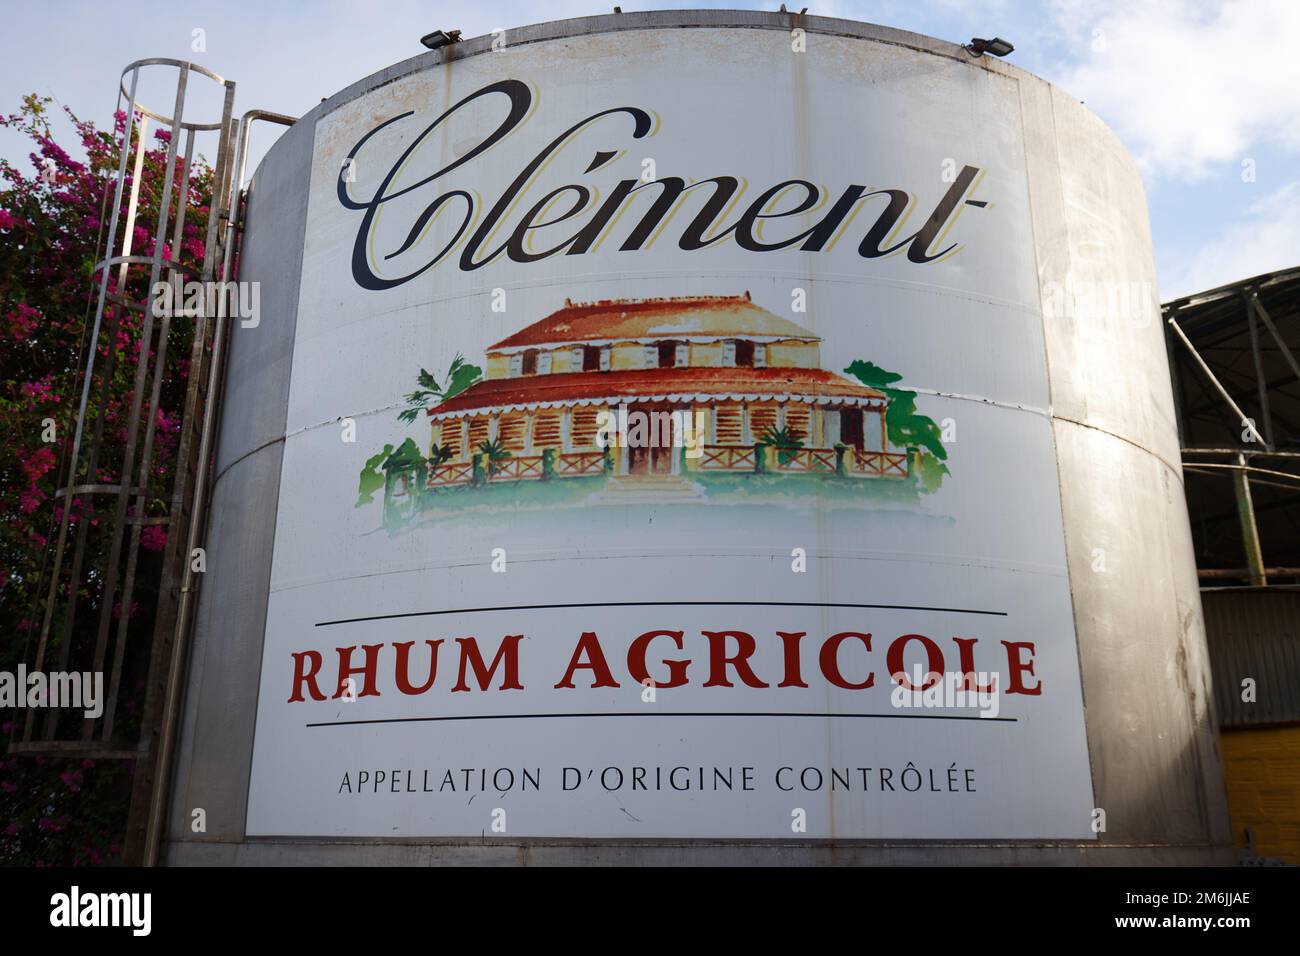 Rhe Rhum vat à la distillerie Clément, un des producteurs de rhum de première qualité de l'île, Martinique, Mer des Caraïbes Banque D'Images